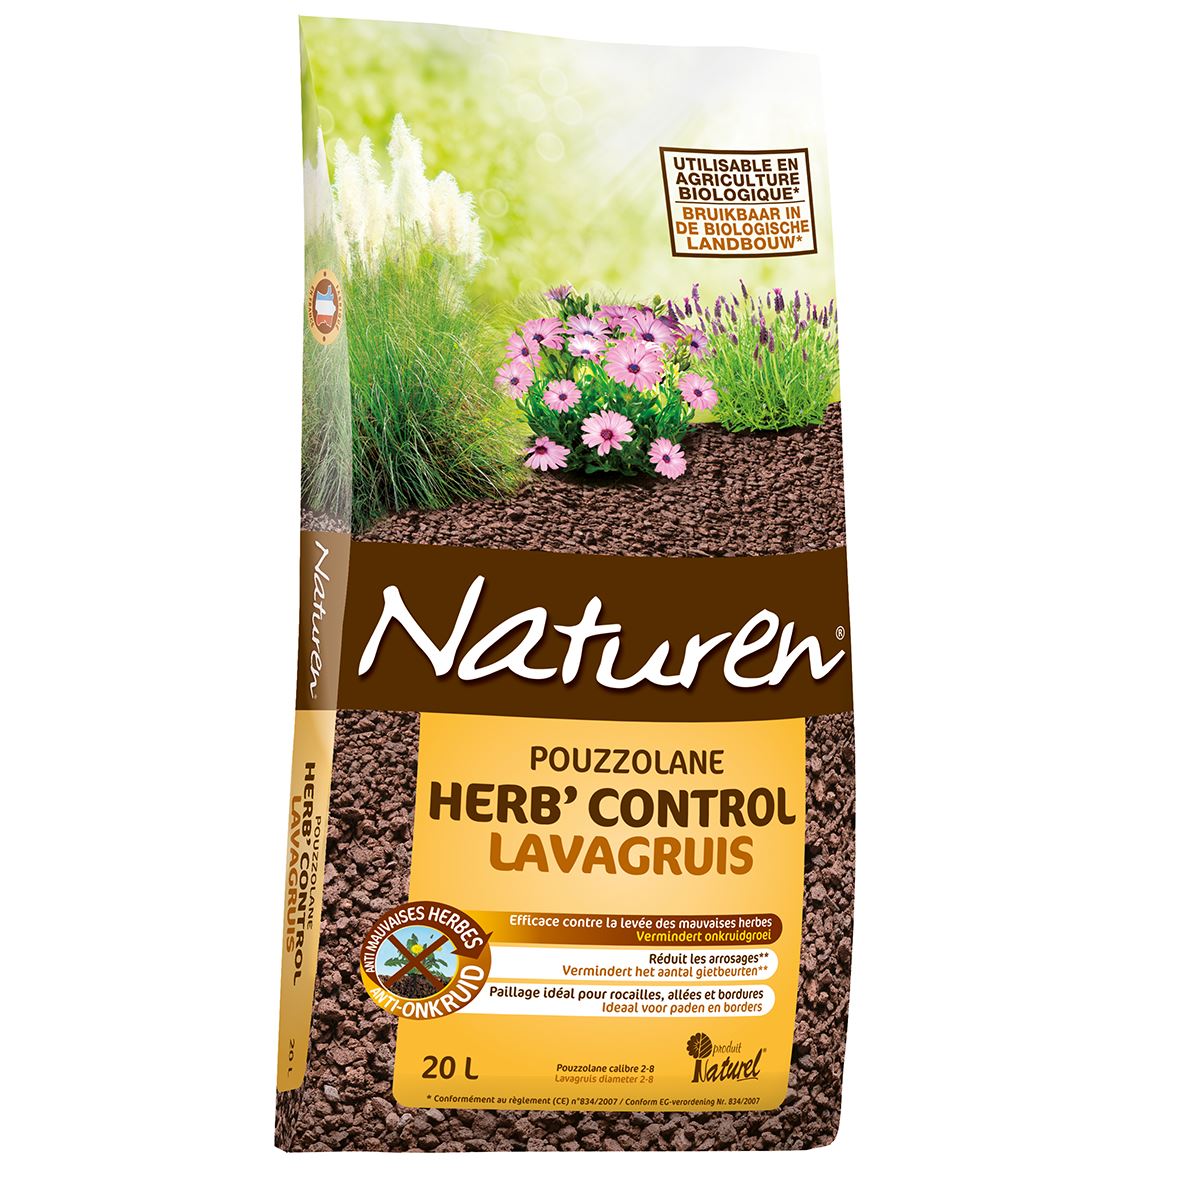 Naturen-Herb-Control-Lavagruis-20L